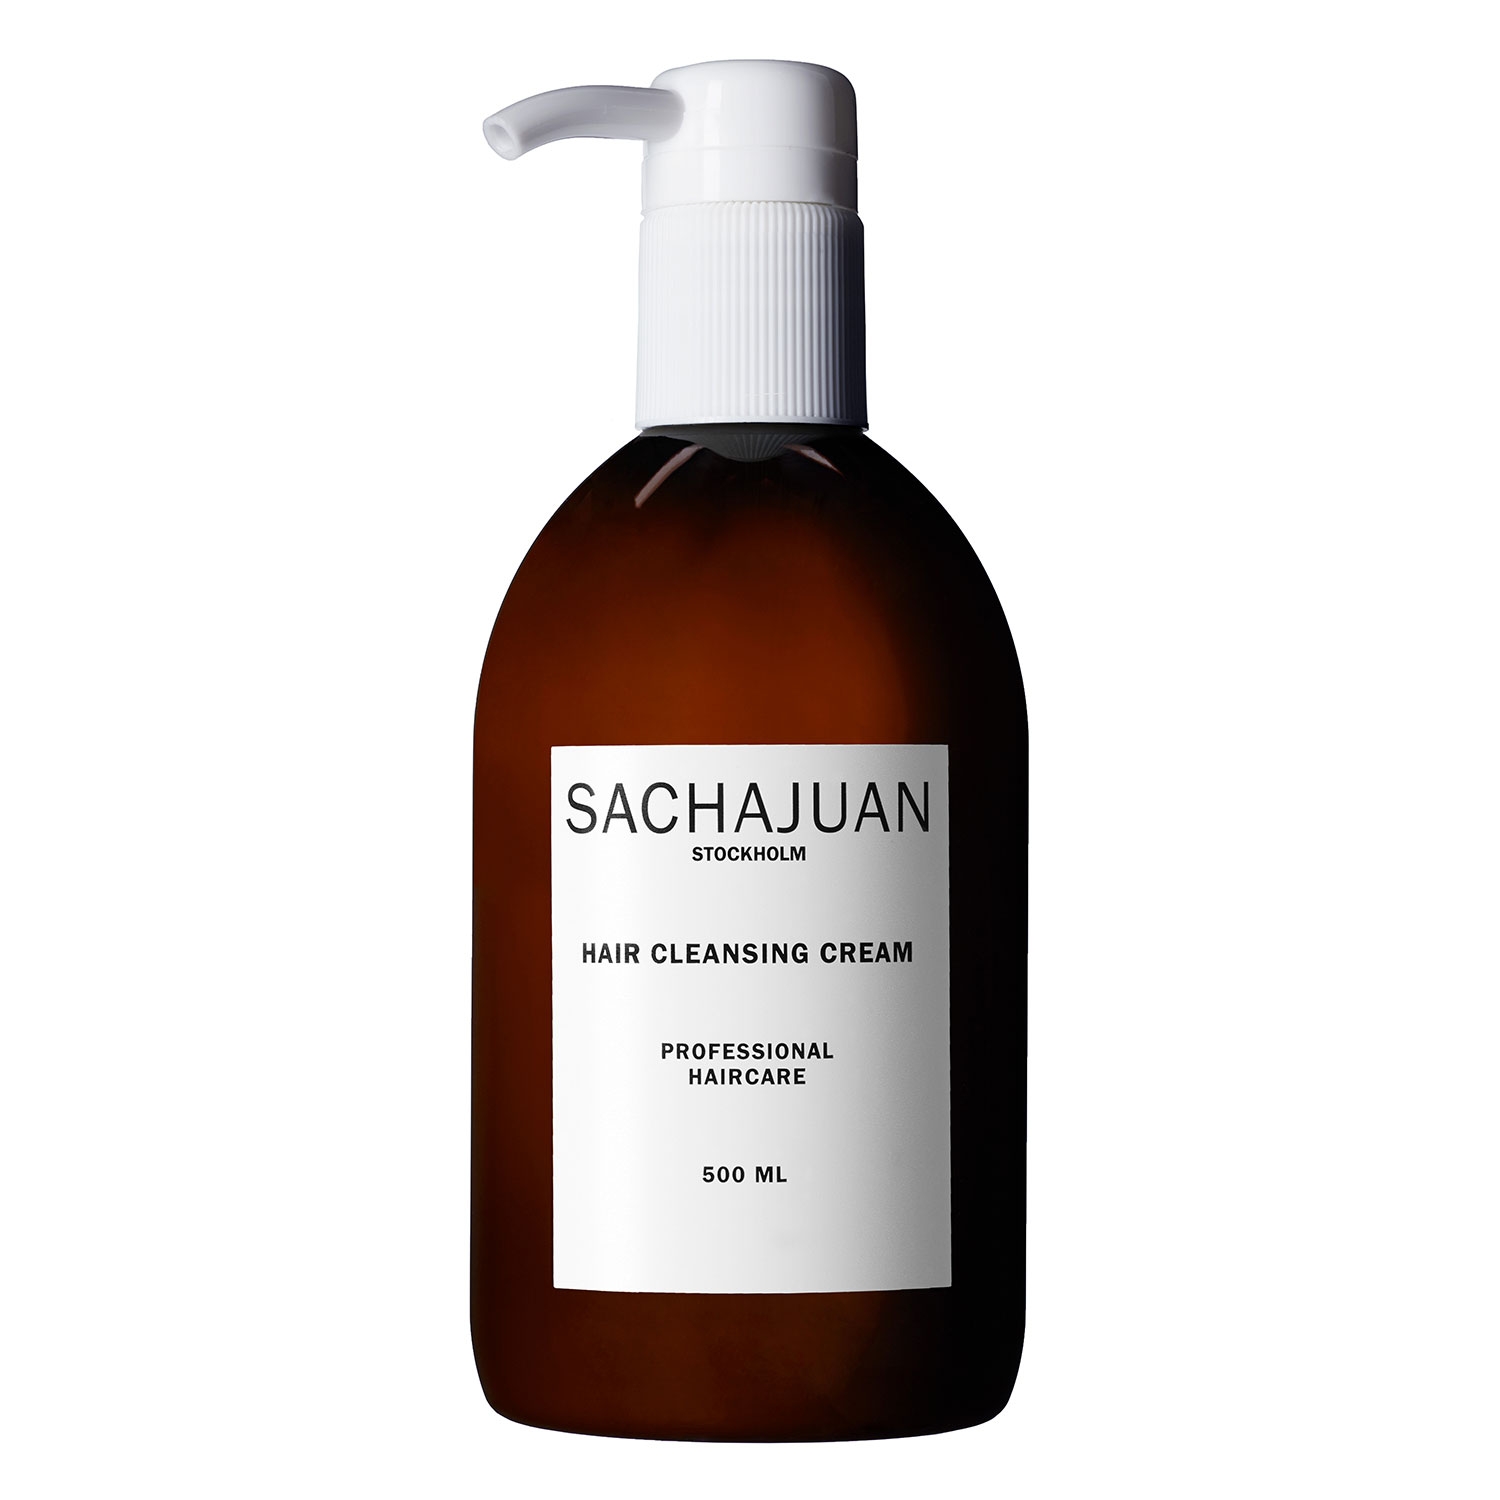 Produktbild von SACHAJUAN - Hair Cleansing Cream